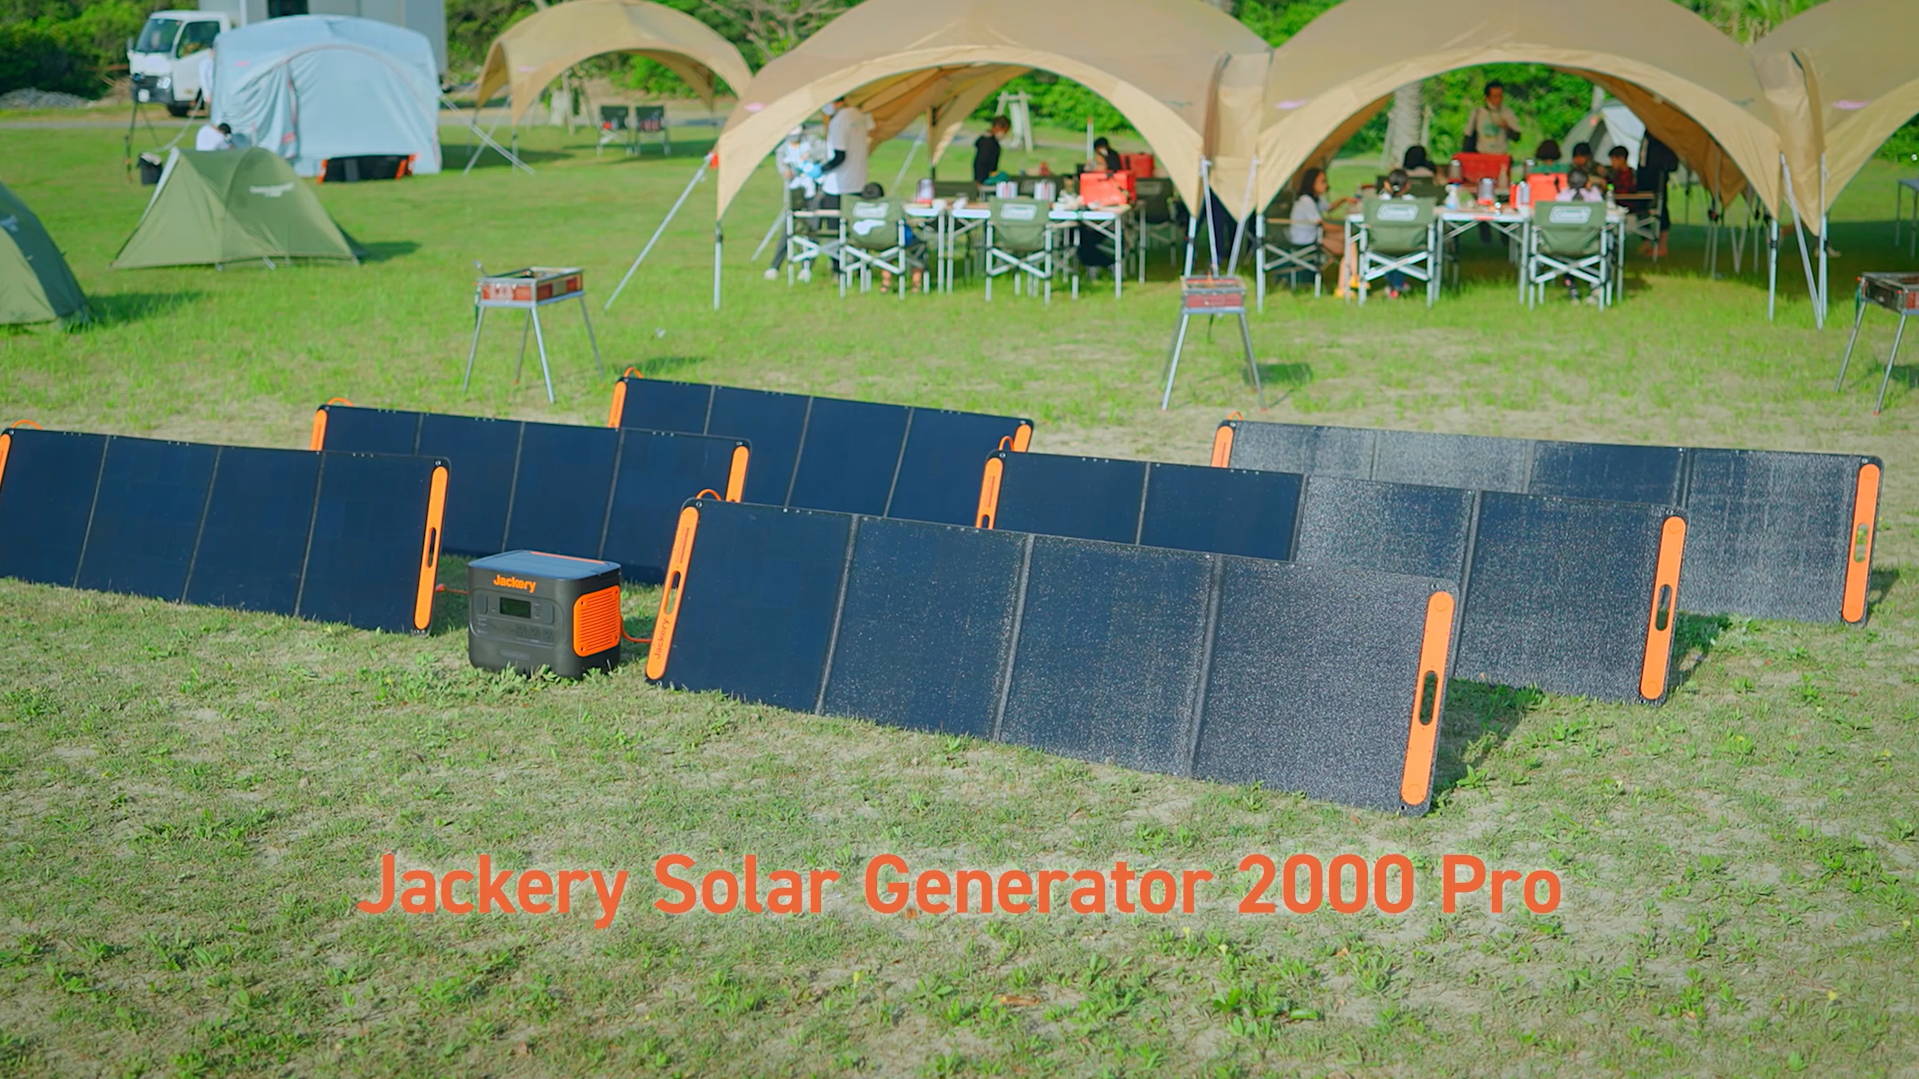 Jackeryのソーラーパネルとポータブル電源を使って太陽光による発電